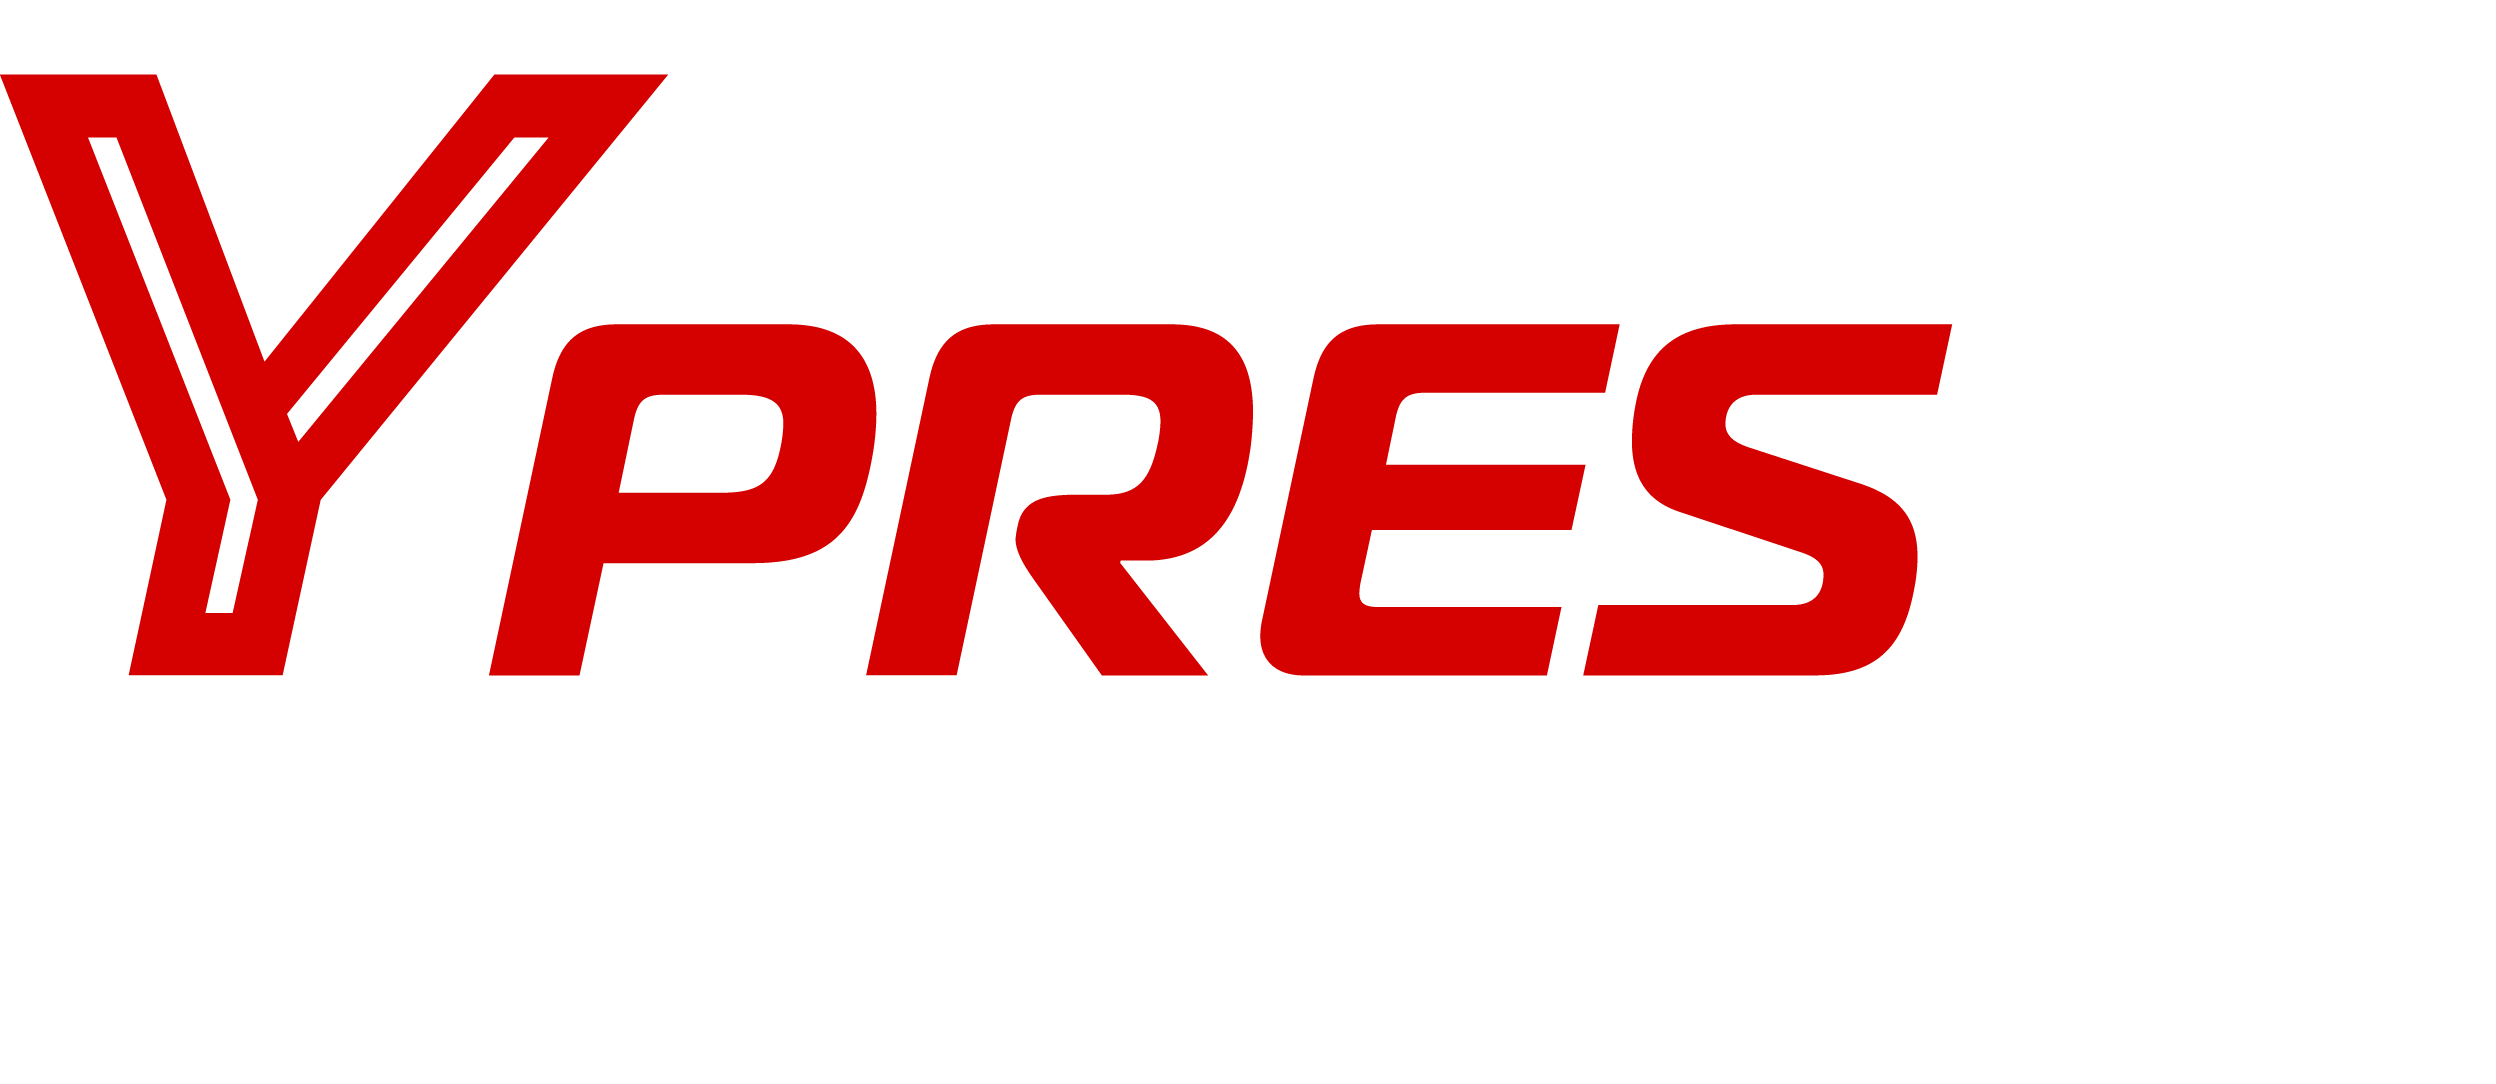 Logo rally ypres white